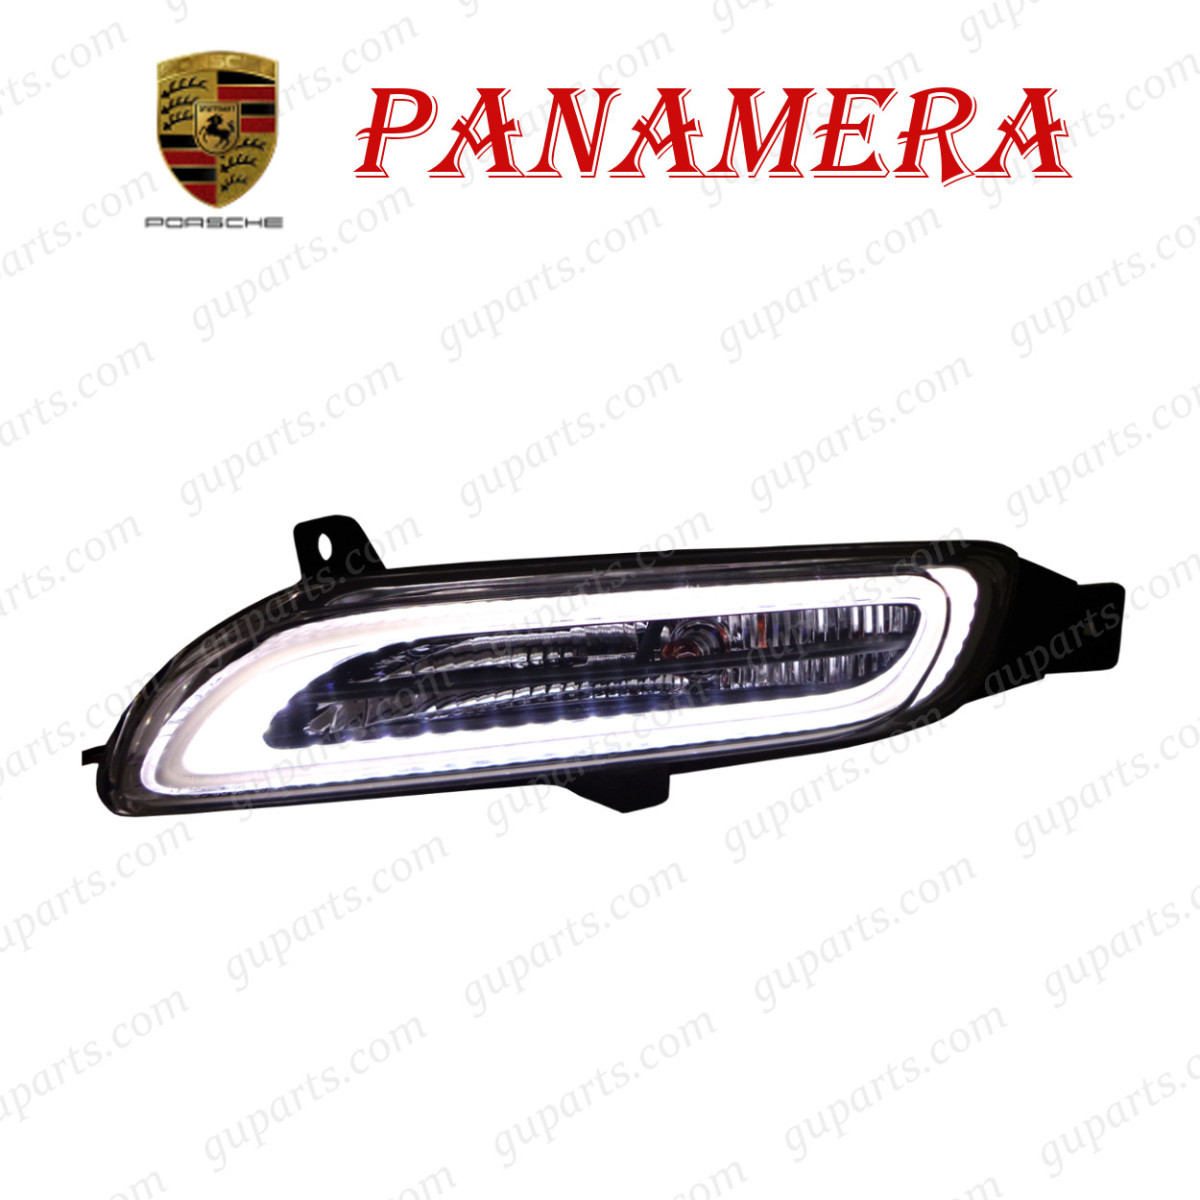 Porsche Panamera 970M48A 970M48TA предыдущий период GTS турбо турбо S левый LED дневной свет противотуманая фара 97063108401 97063108402 97063108403